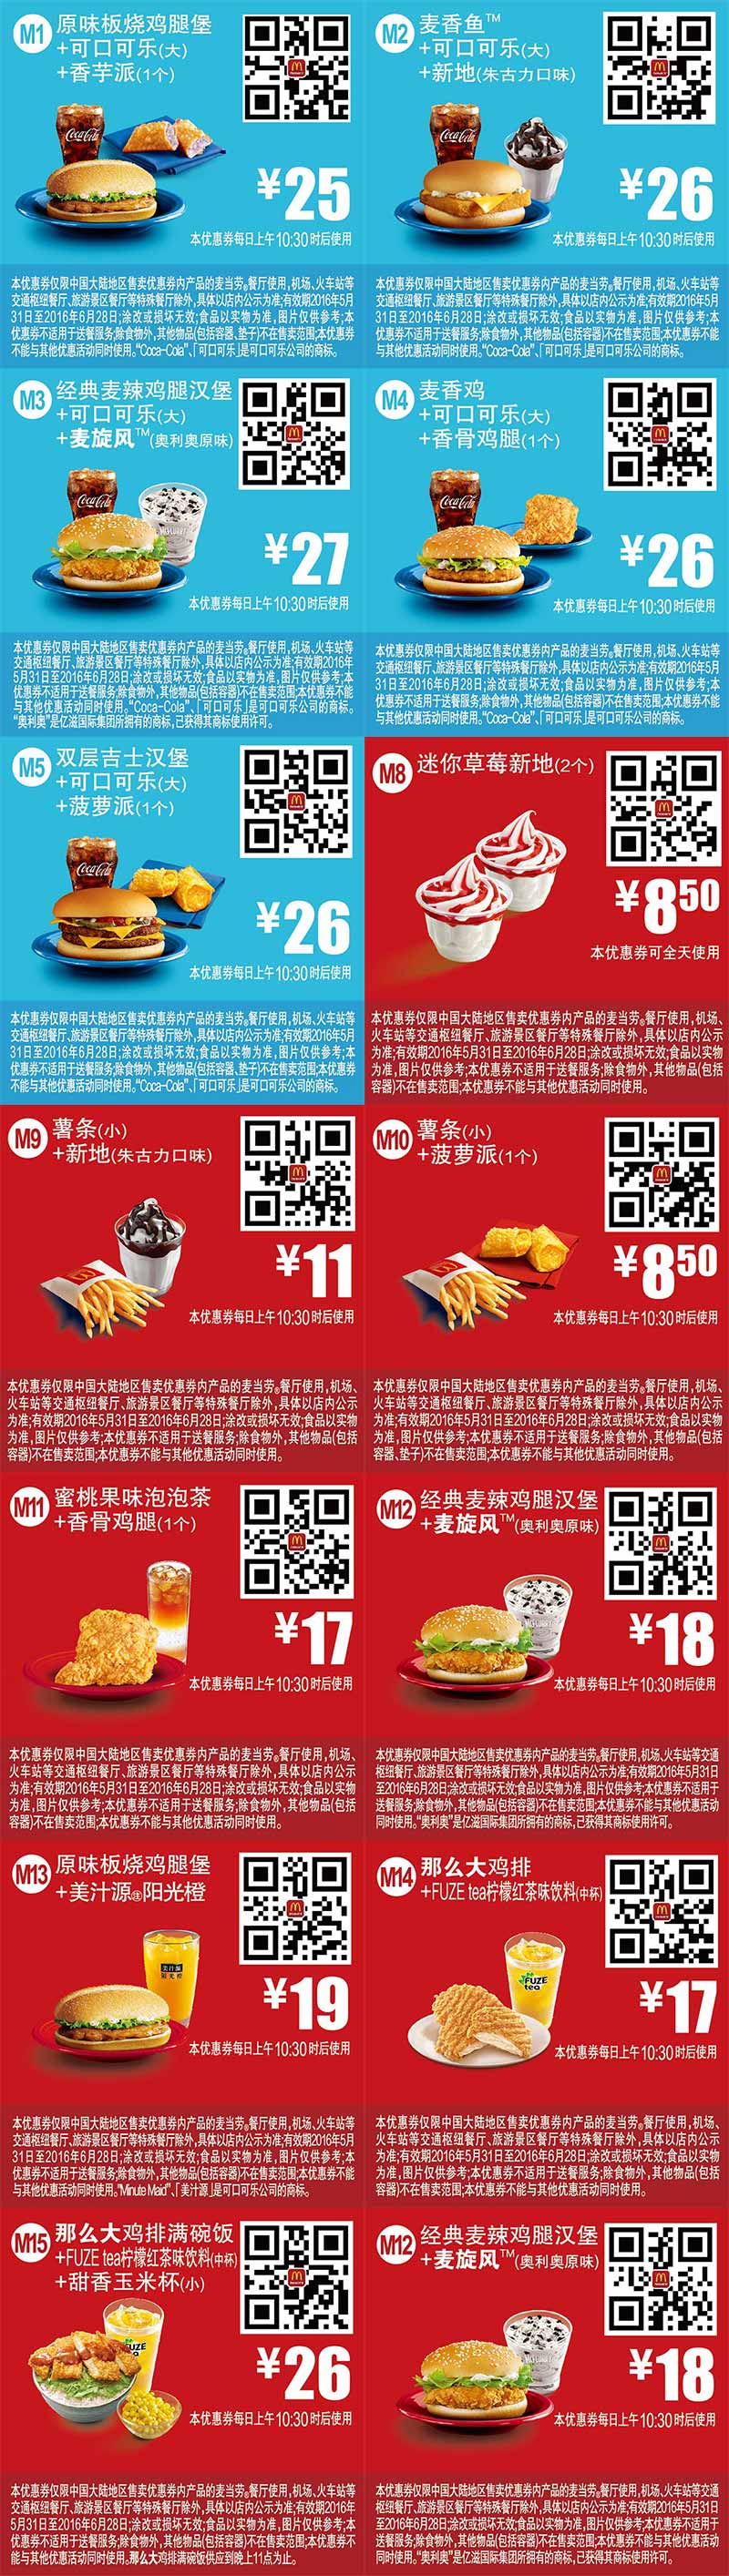 麦当劳优惠券2016年6月手机版整张版本，手机出示即享优惠价 有效期至：2016年6月28日 www.5ikfc.com